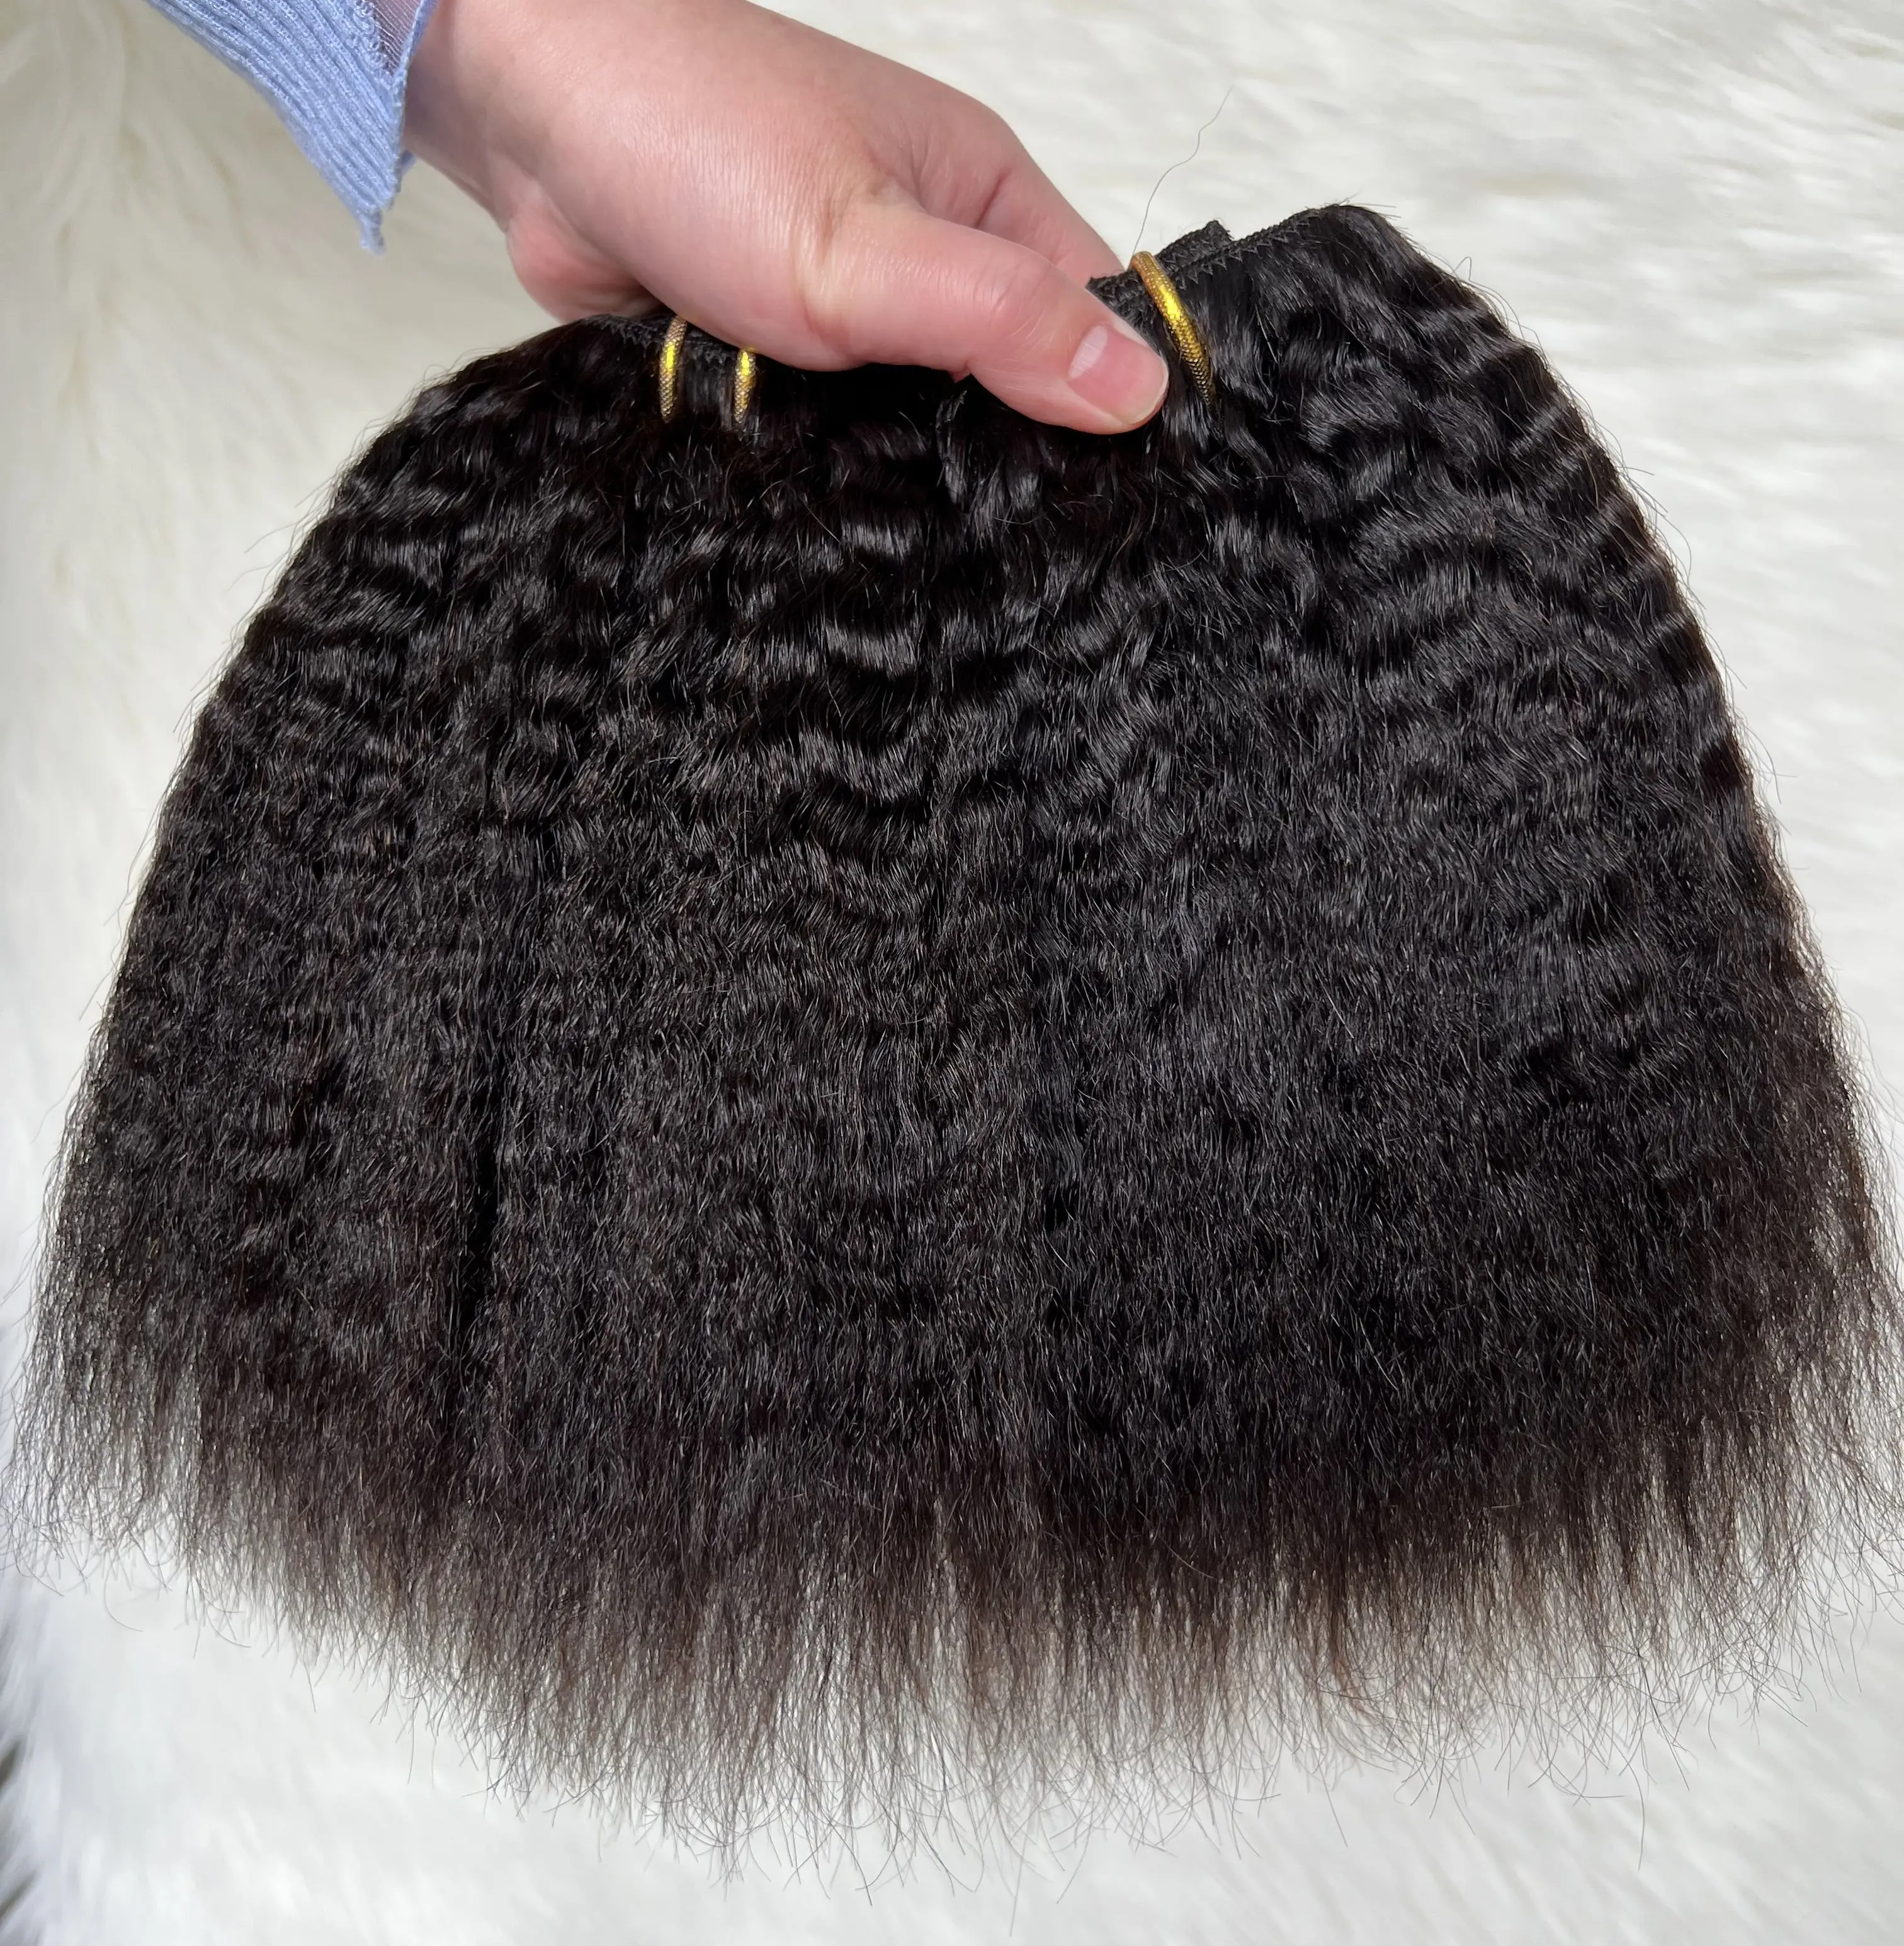 Commercio all'ingrosso di buona qualità 100% capelli umani Remy brasiliani crespi dritti invisibili Clip senza cuciture nelle estensioni dei capelli